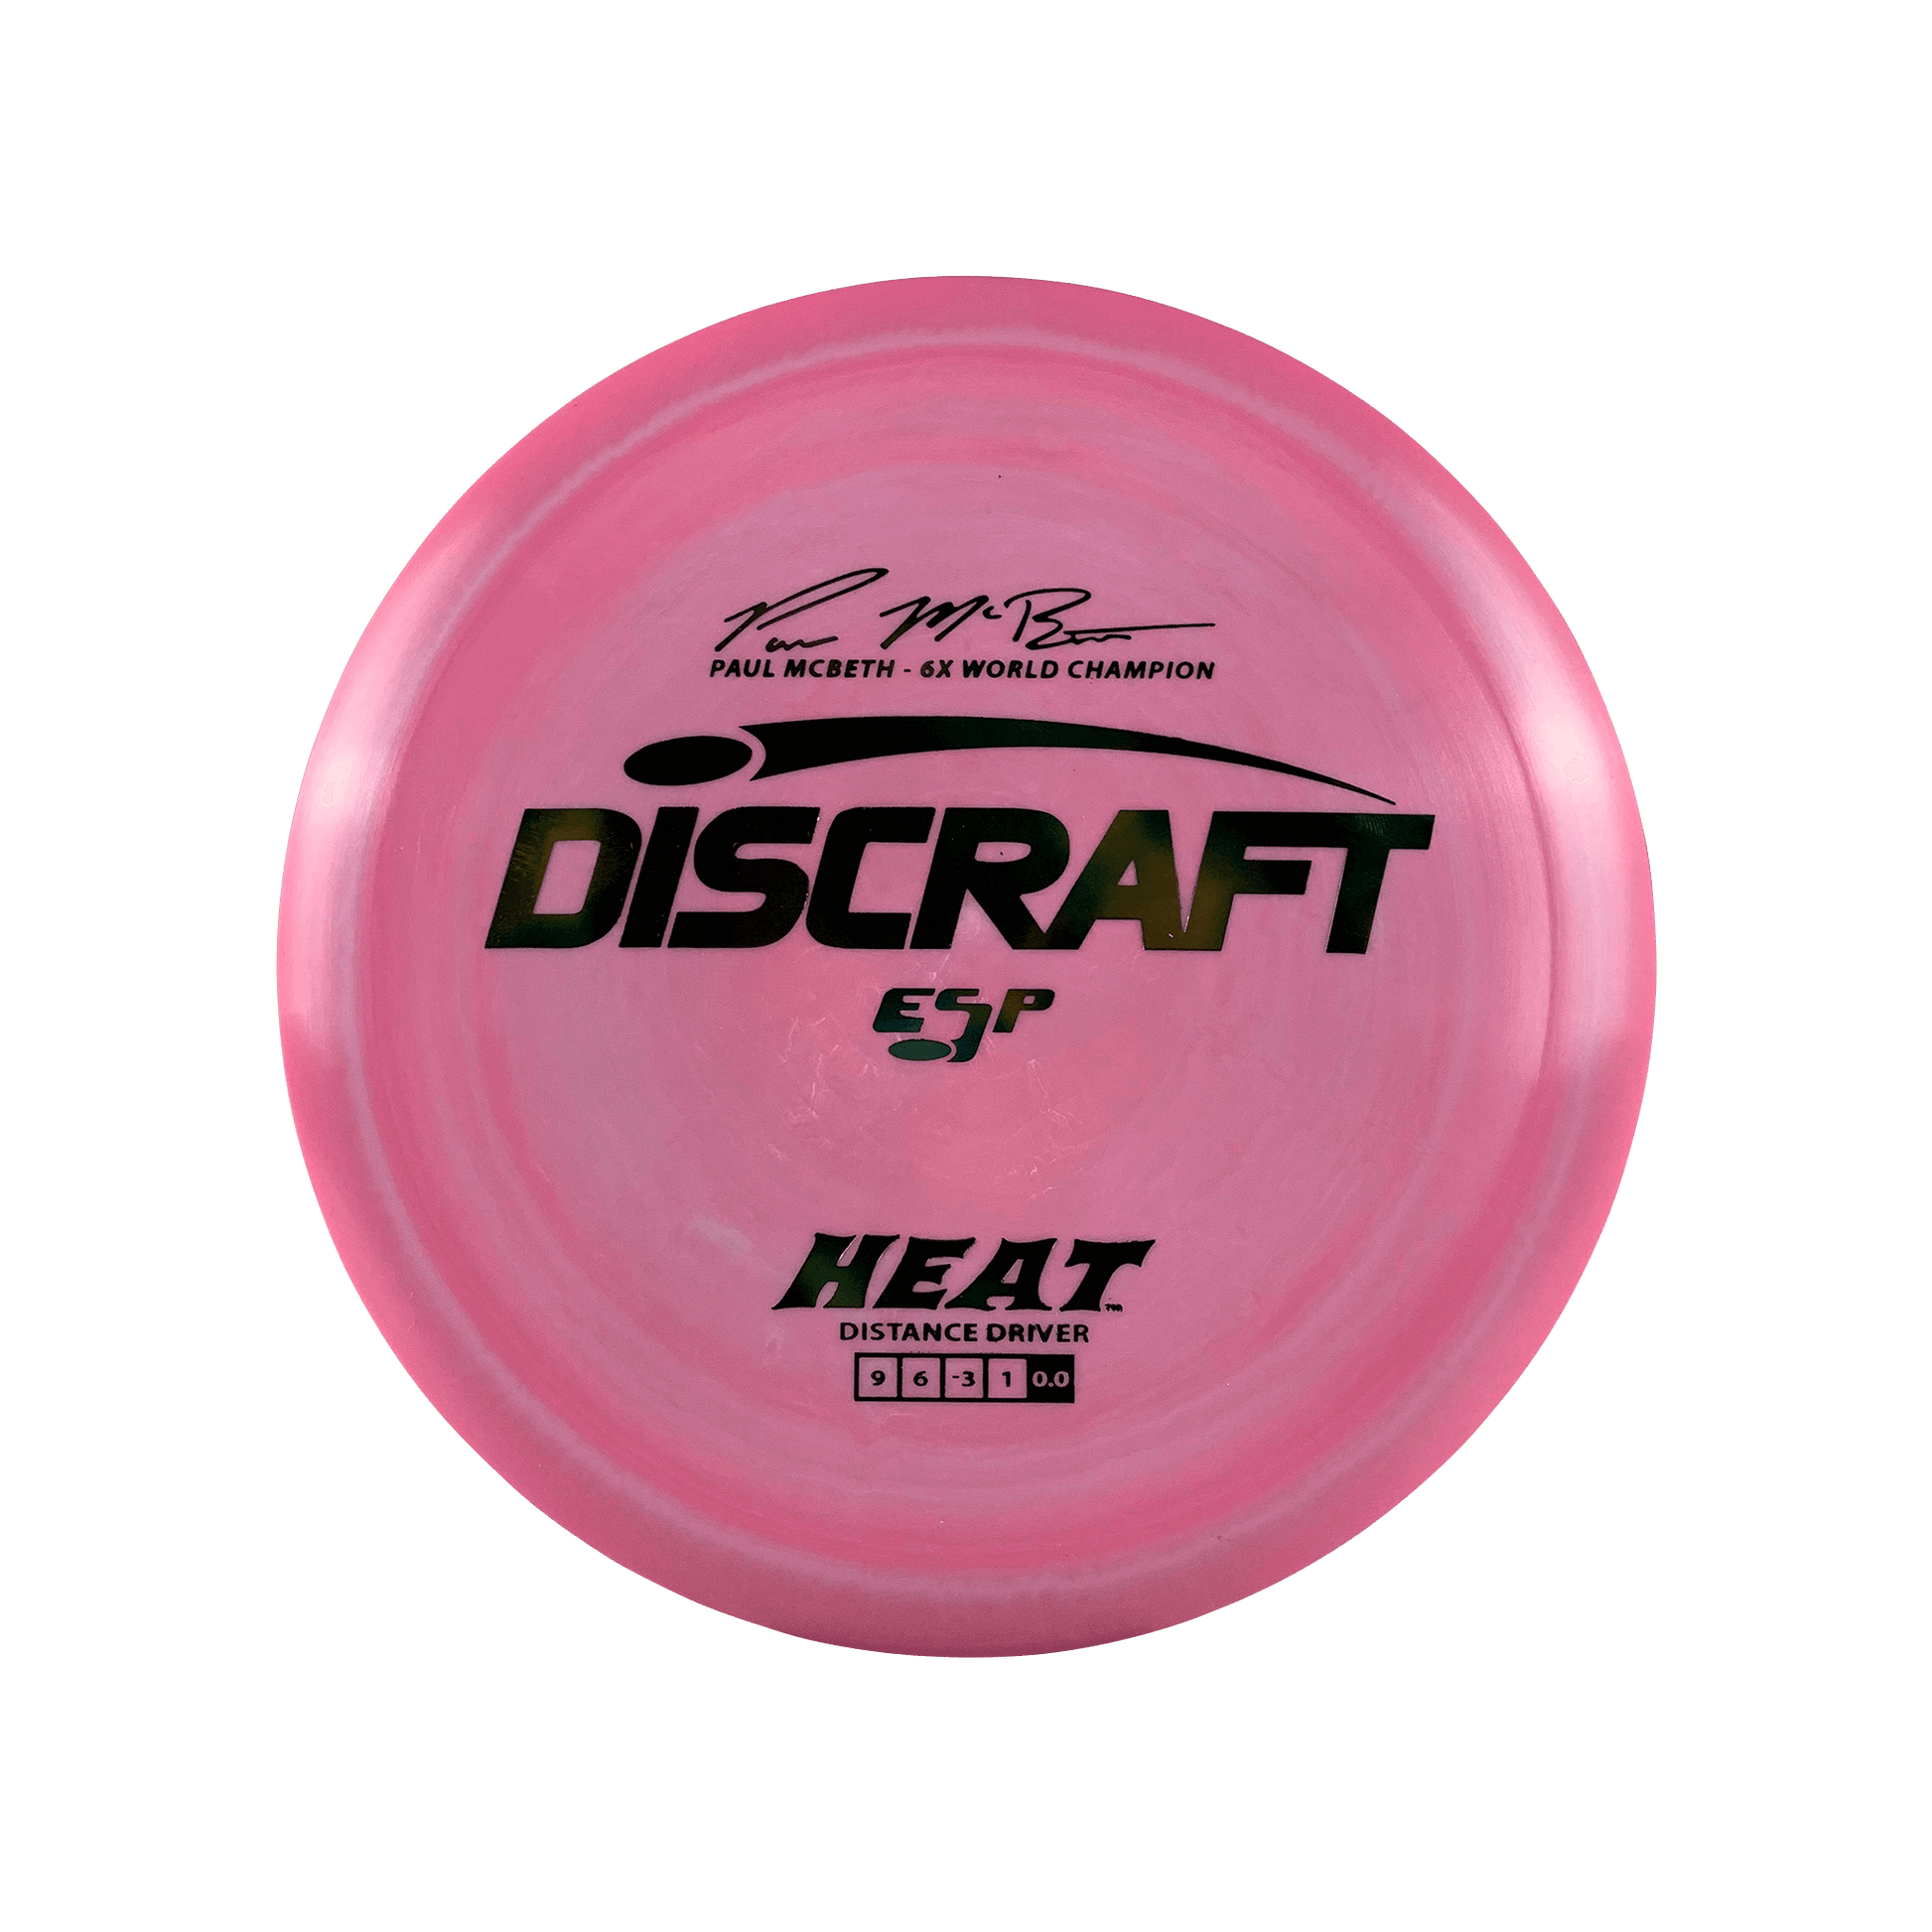 ESP Heat - Paul McBeth 6x Disc Discraft multi / pink 173 